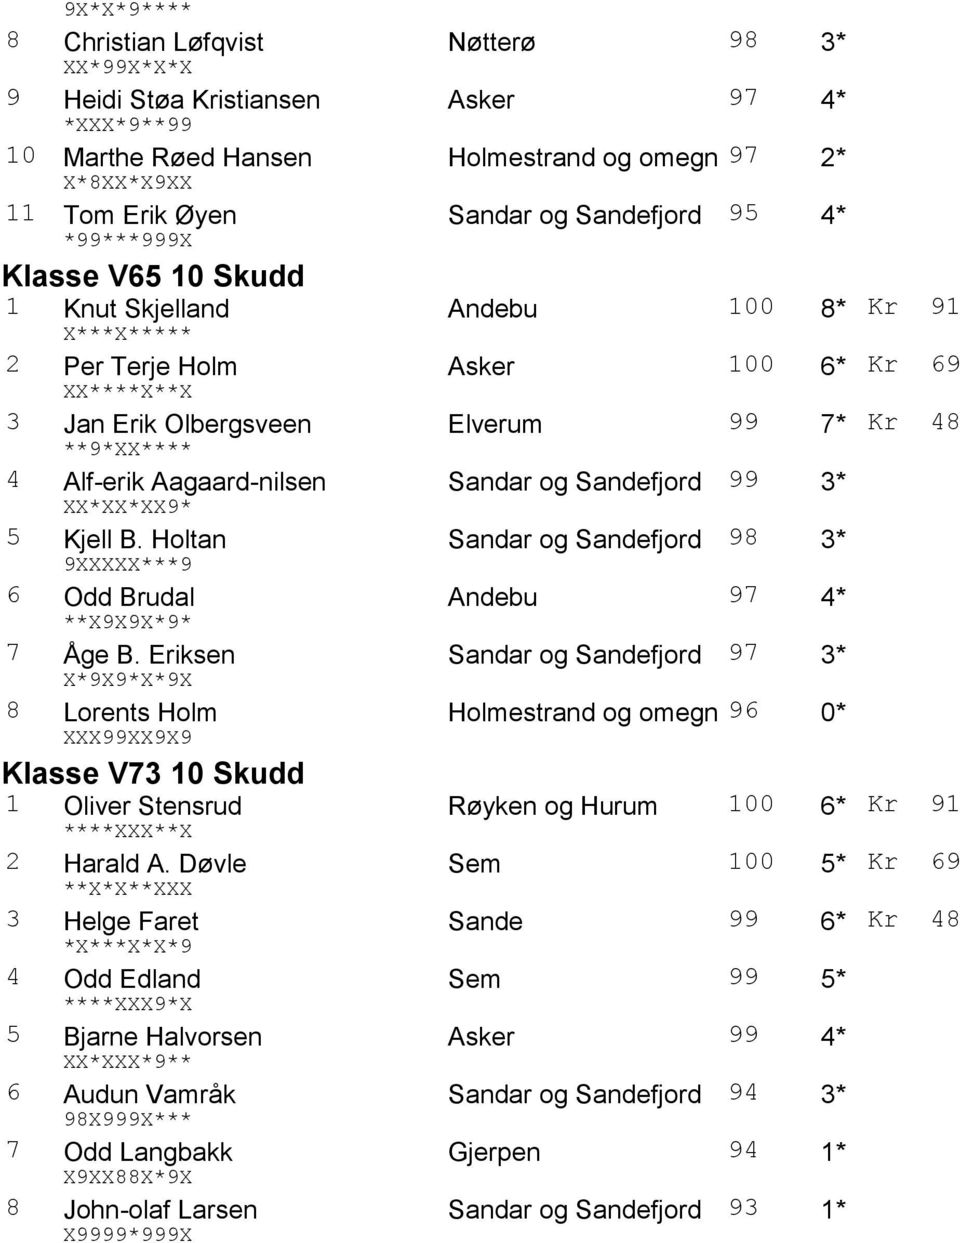 Aagaard-nilsen Sandar og 99 3* XX*XX*XX9* 5 Kjell B. Holtan Sandar og 98 3* 9XXXXX***9 6 Odd Brudal Andebu 97 4* **X9X9X*9* 7 Åge B.